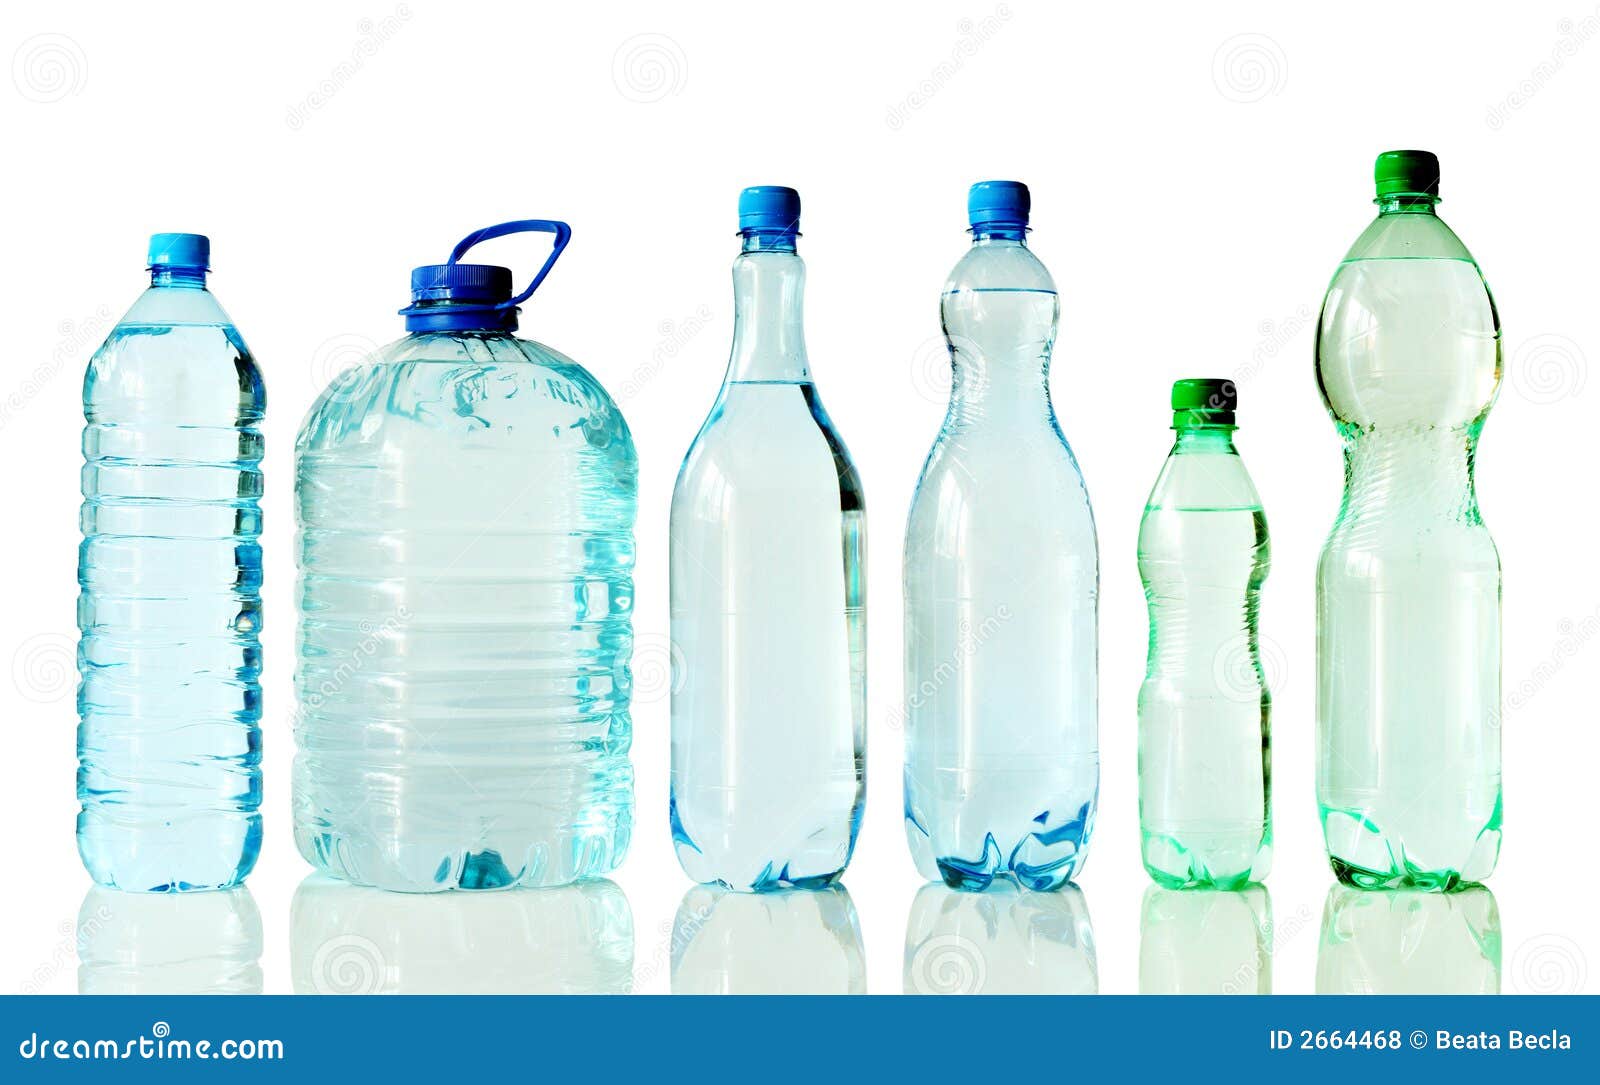 Вода в сосуде 270. Сосуд с водой. Бутылки разных форм. Вода в разных сосудах. Вода в сосудах разной формы.